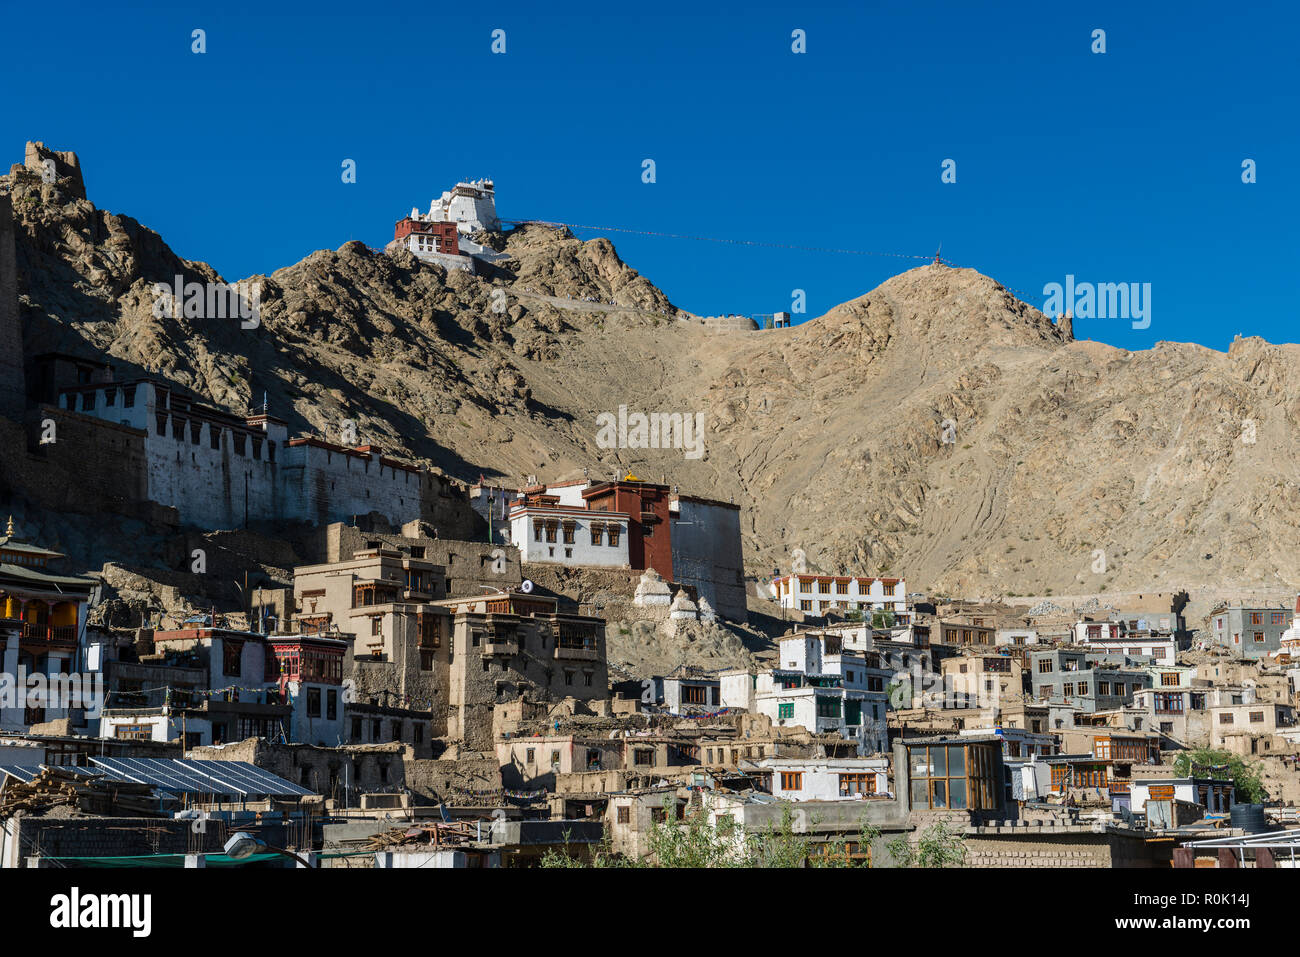 Häuser der alten Gemeinde von Leh, der Hauptstadt Ladakhs und bei 3.600 m über dem Meeresspiegel gelegen, mit umliegenden Hügeln und Namgyal Tsemo Gompa in der Stockfoto